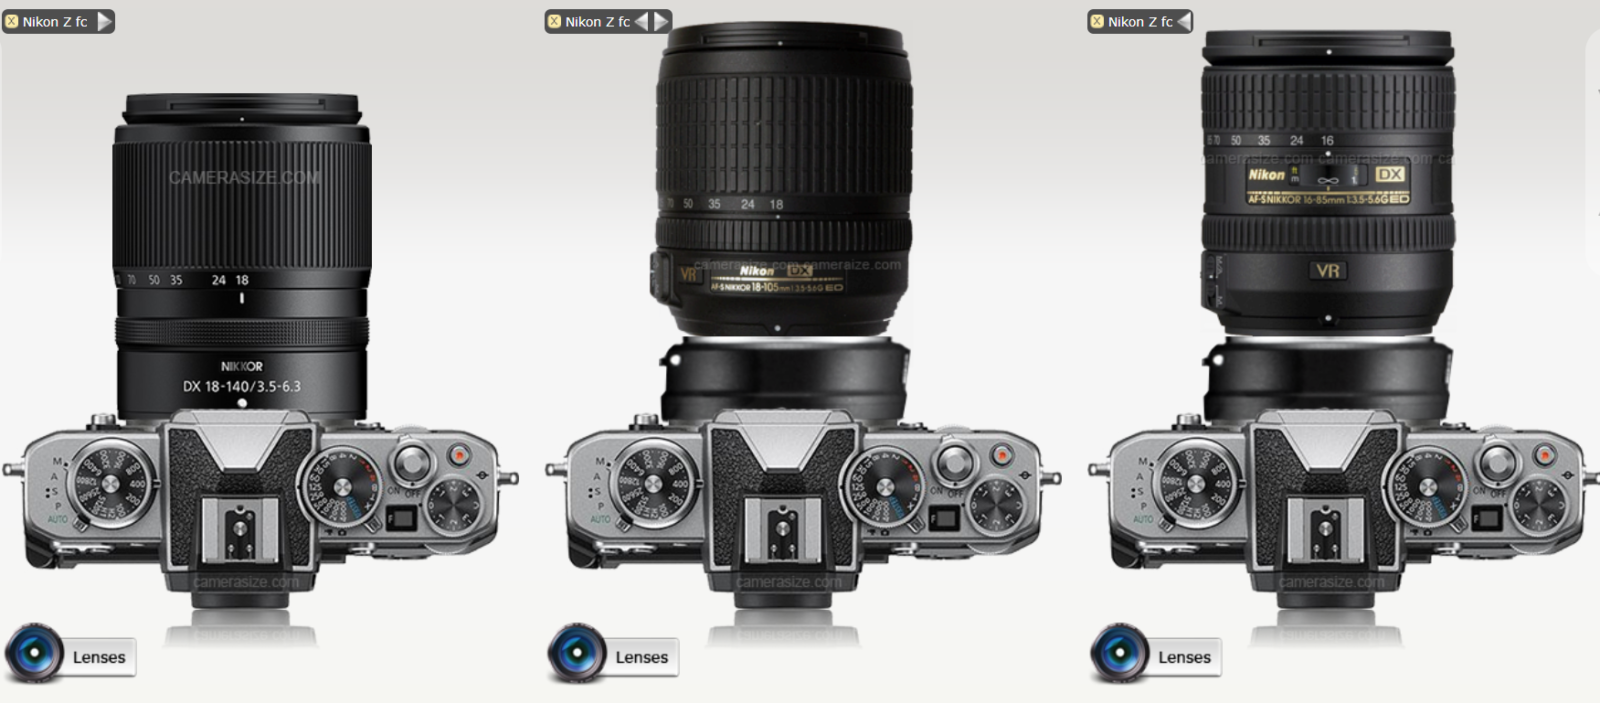 Nikon Z 18-140mm f/3.5-6.3 VR